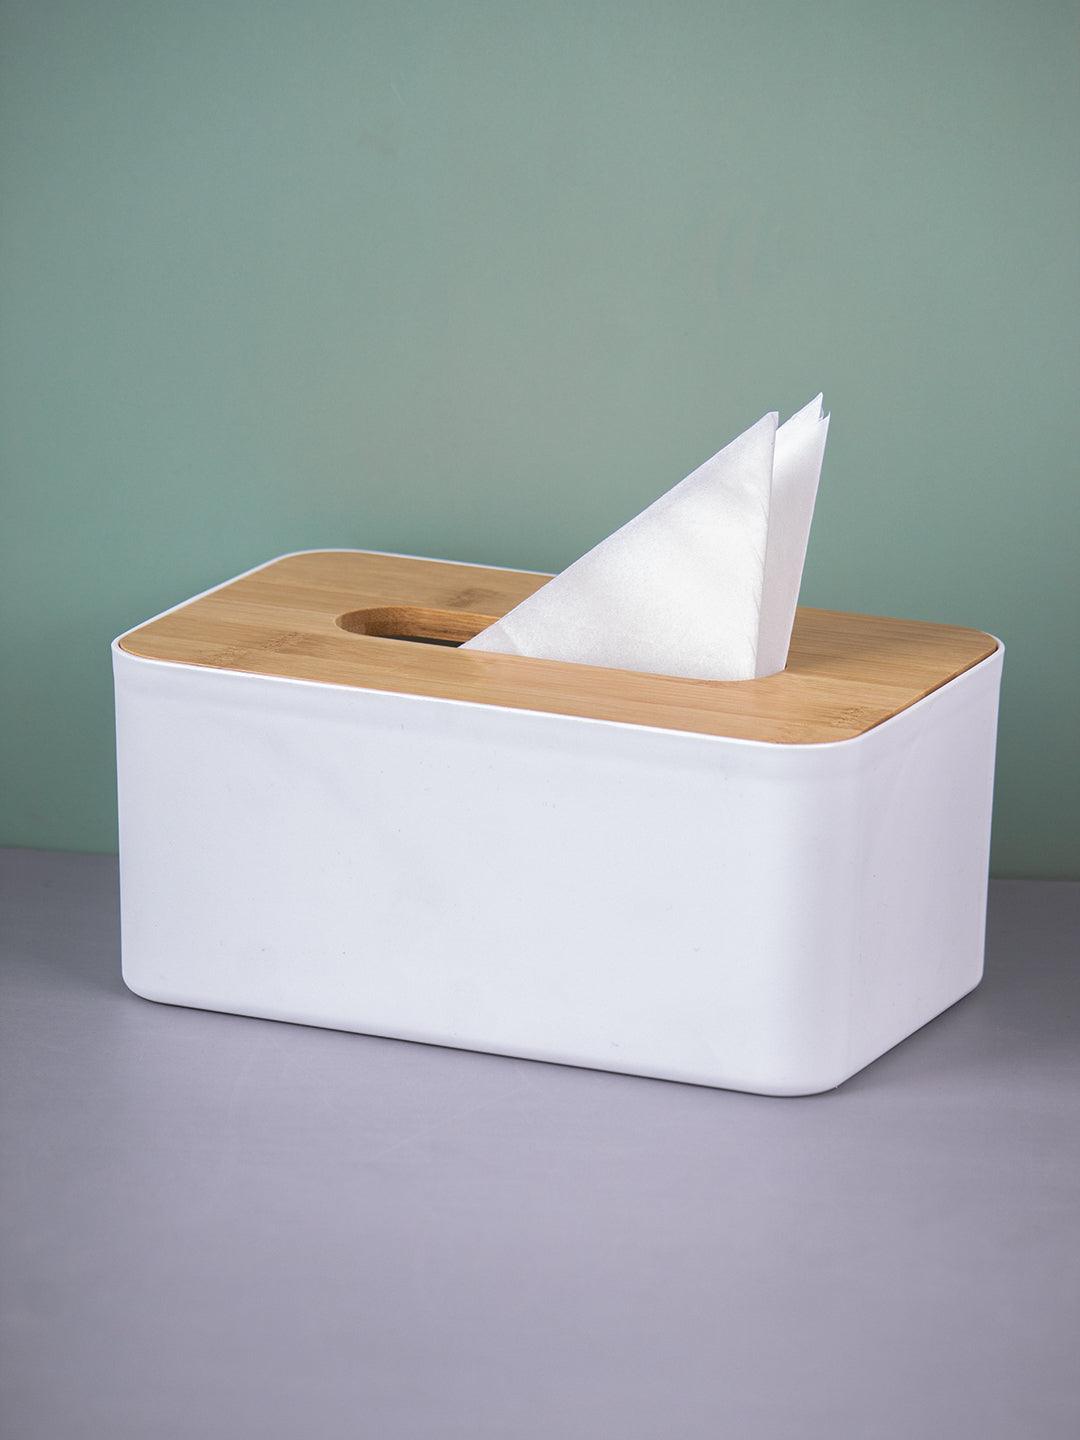 Market99 Wooden Cover Plastic Tissue Box Holder | Paper Napkin Holder Case - MARKET 99